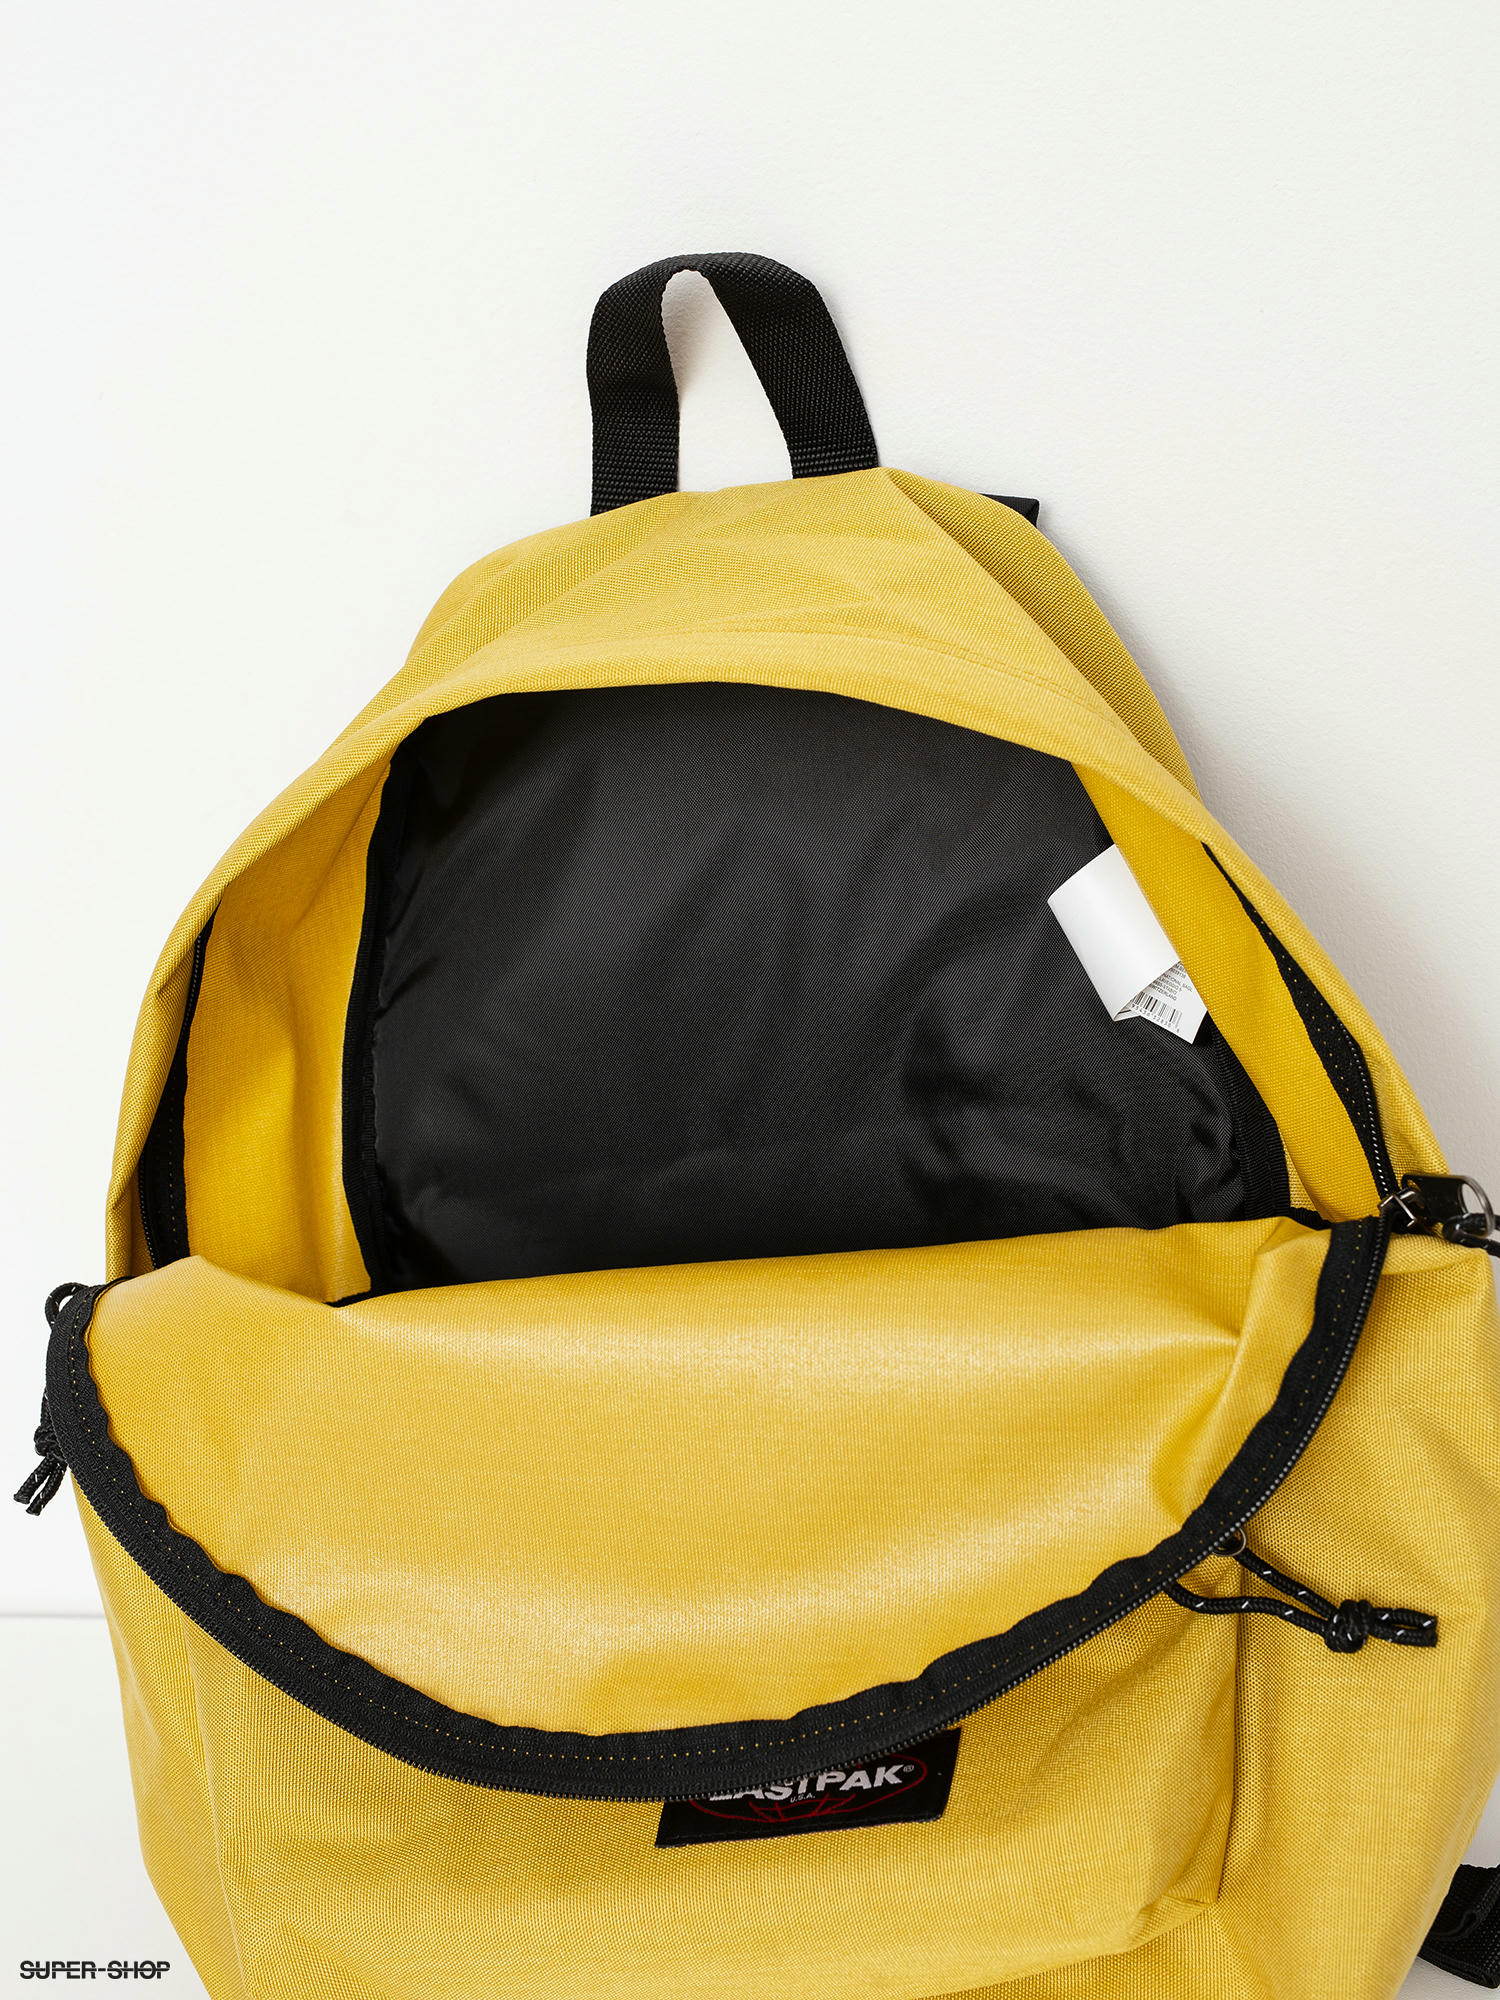 Eastpak Padded Pak R Backpack (goldenrod yellow)